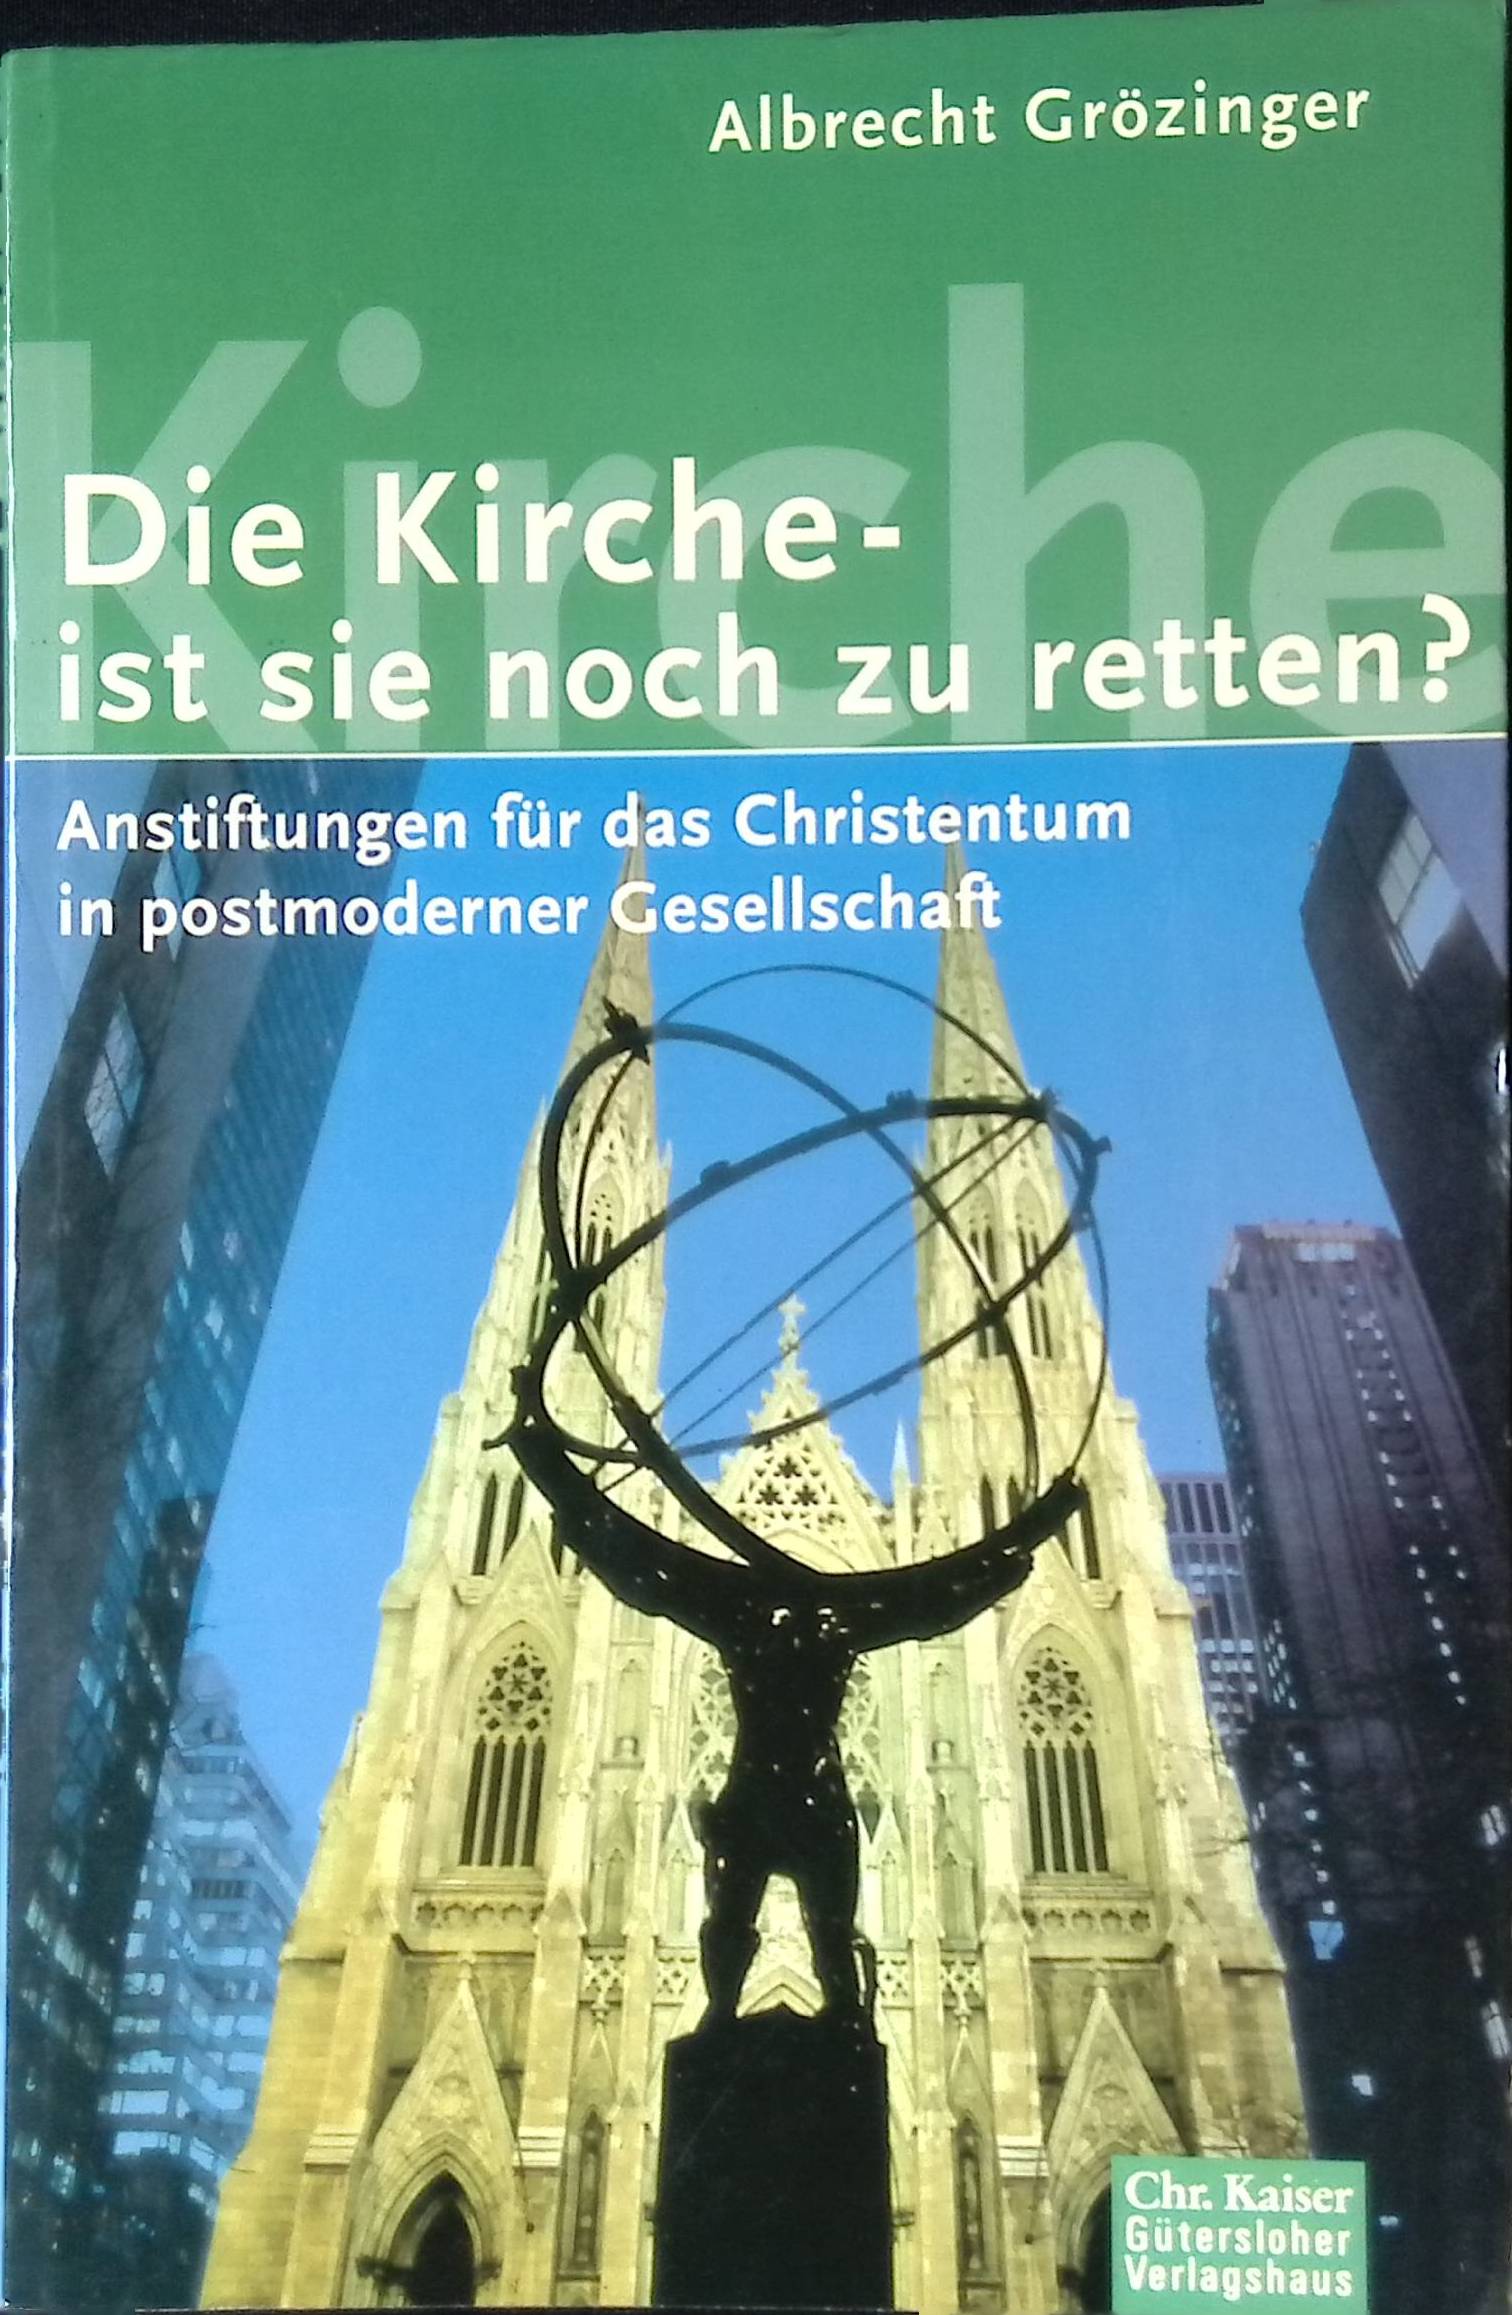 Die Kirche - ist sie noch zu retten? : Anstiftungen für das Christentum in postmoderner Gesellschaft. - Grözinger, Albrecht